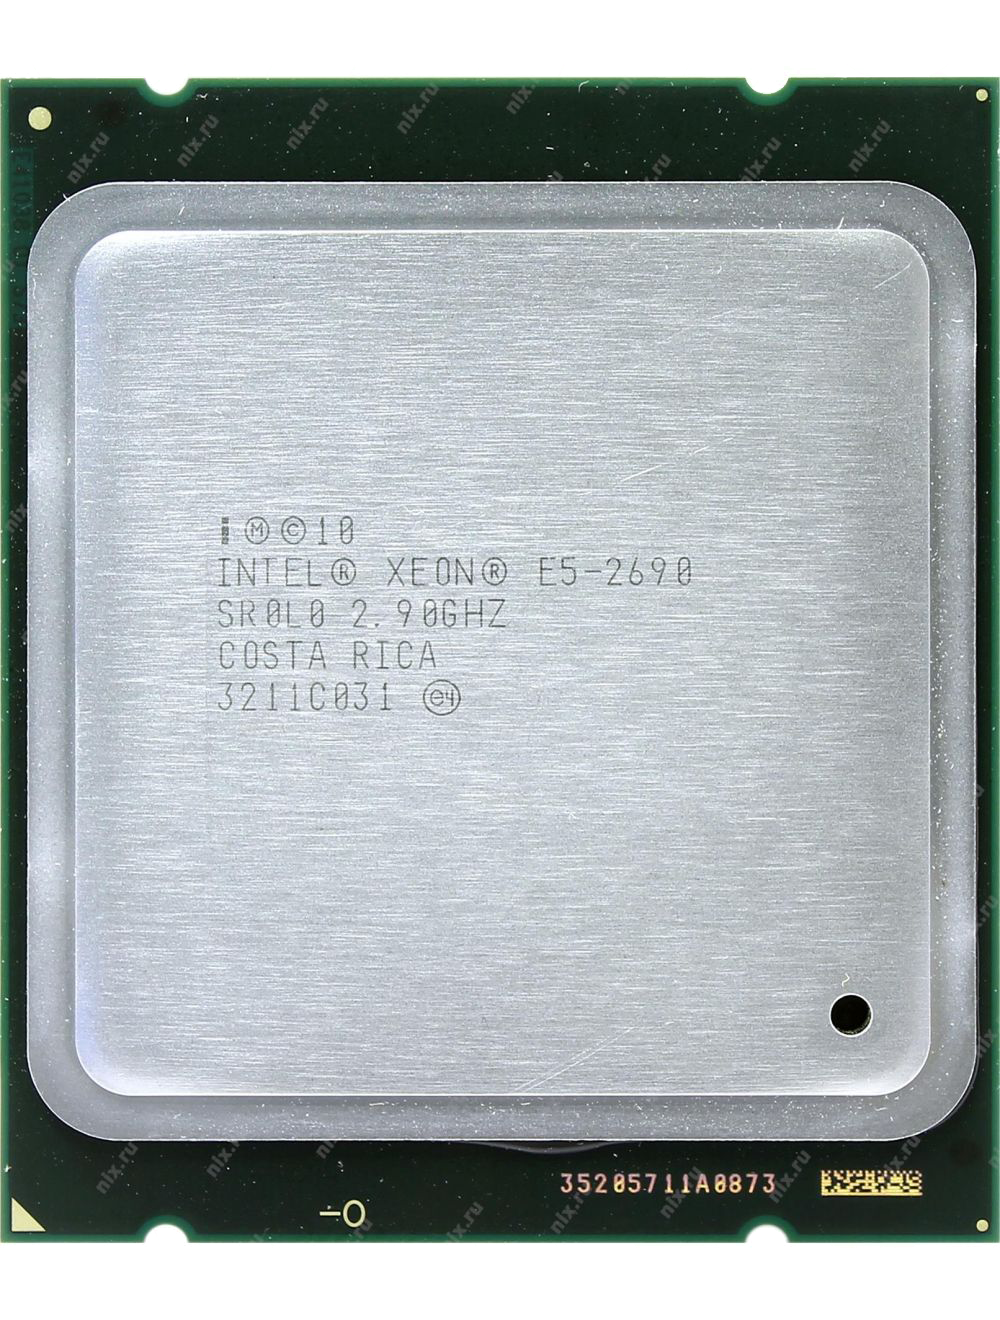 Intel Xeon E5-2690 P/N: SR0L0 